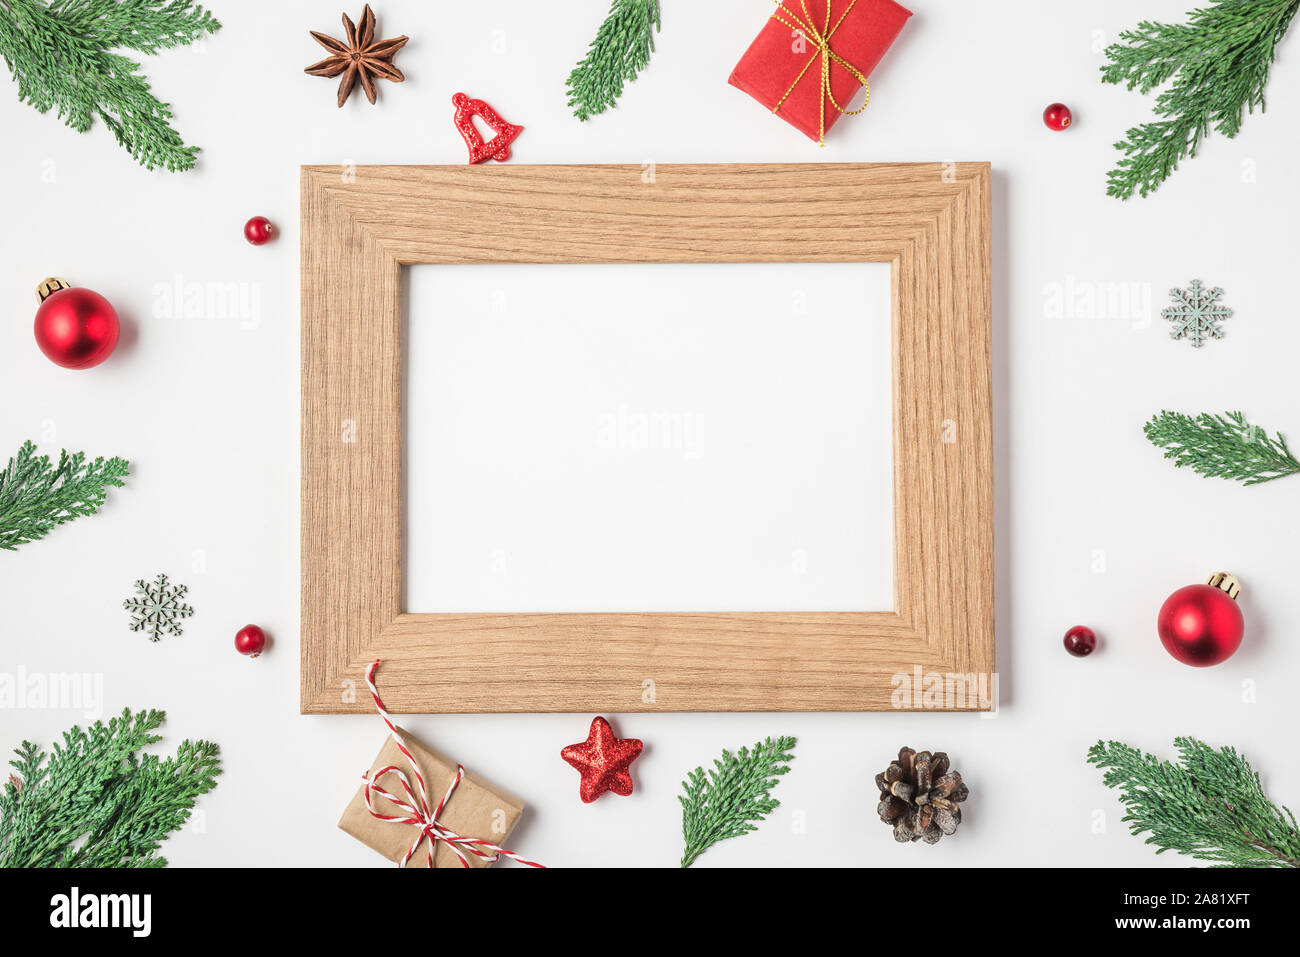 Leer Weihnachten Foto Karte im Rahmen der Fir Tree Branches, Geschenkboxen, rot Urlaub Dekorationen auf weißem Hintergrund. Mock up. Flach. top Aussicht wi Stockfoto